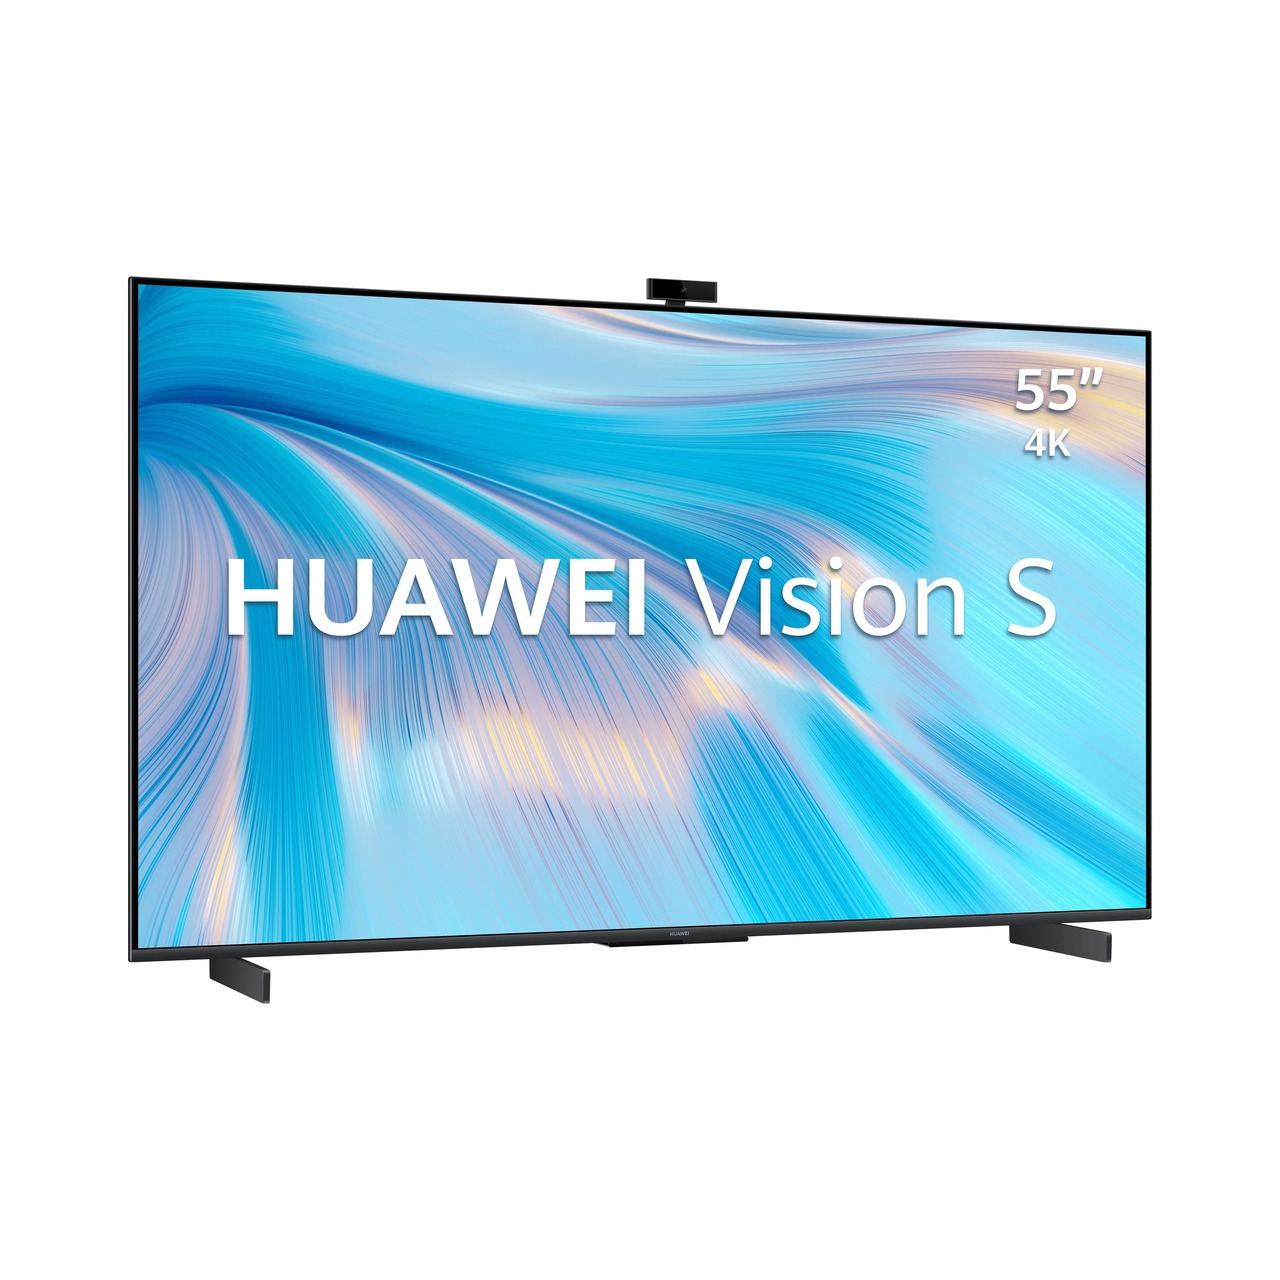 Huawei Vision S, las nuevas pantallas por las que apuesta la marca